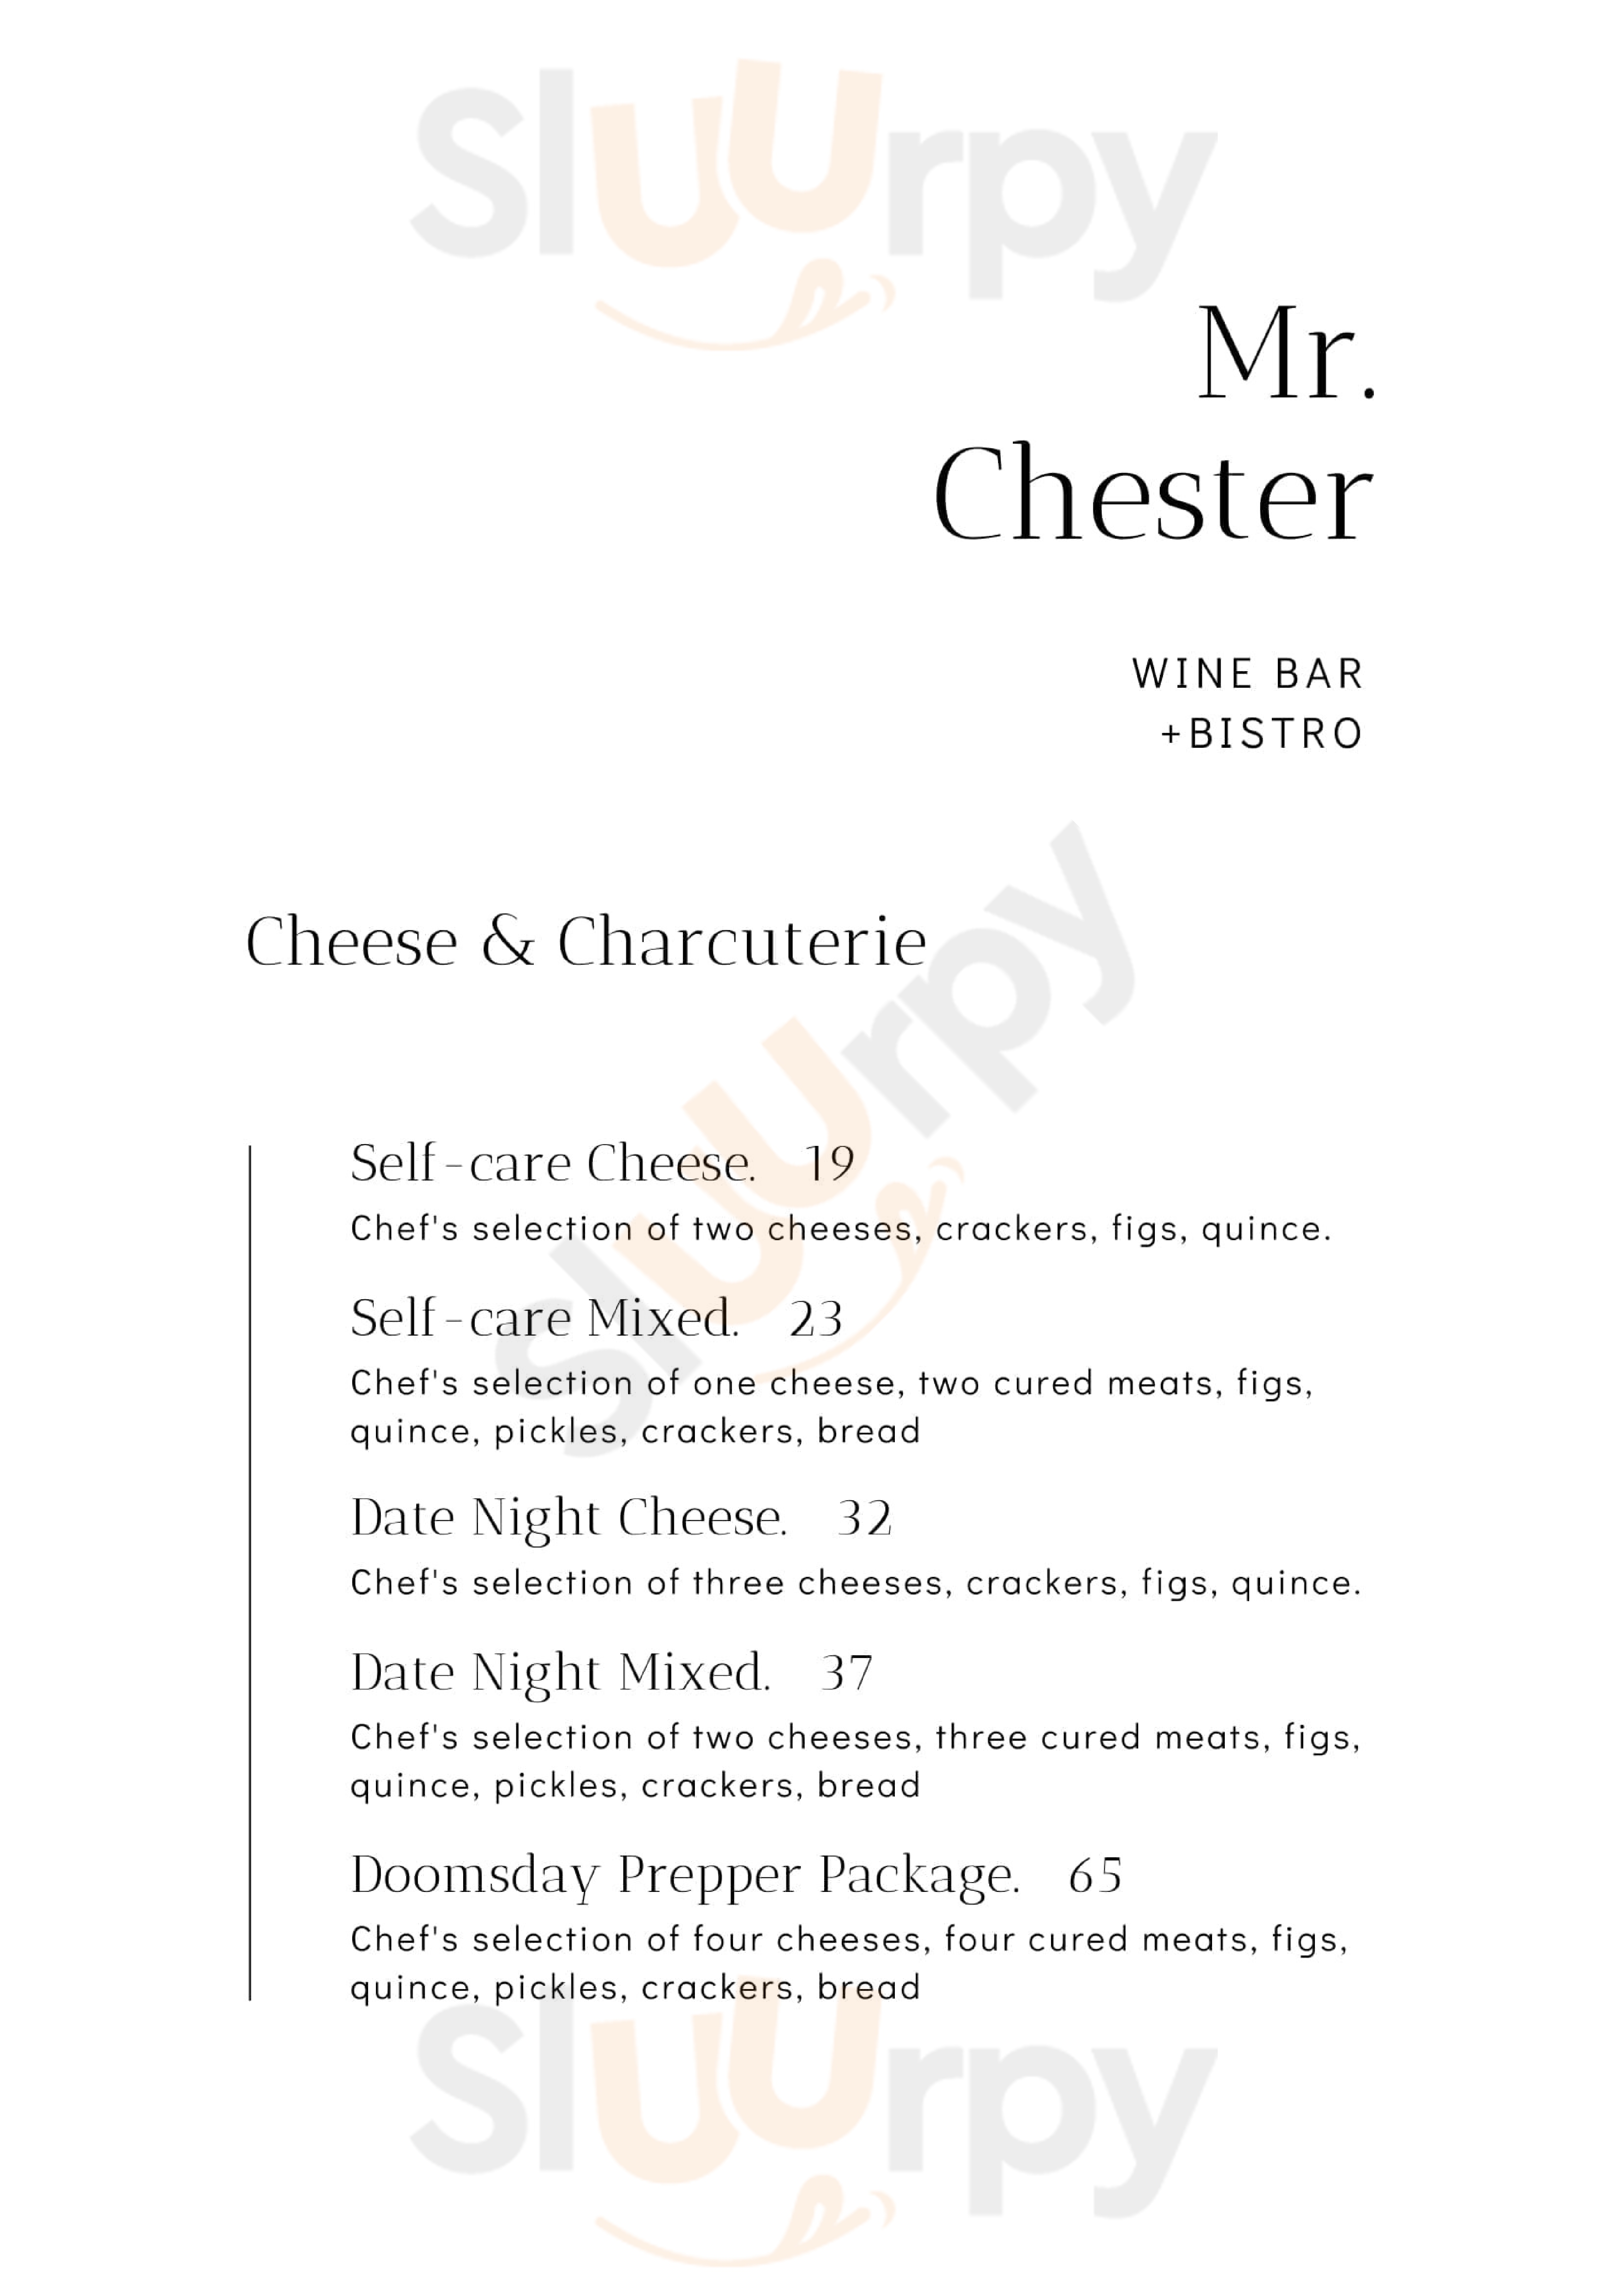 Mr Chester Wine Bar & Bistro Brisbane Menu - 1